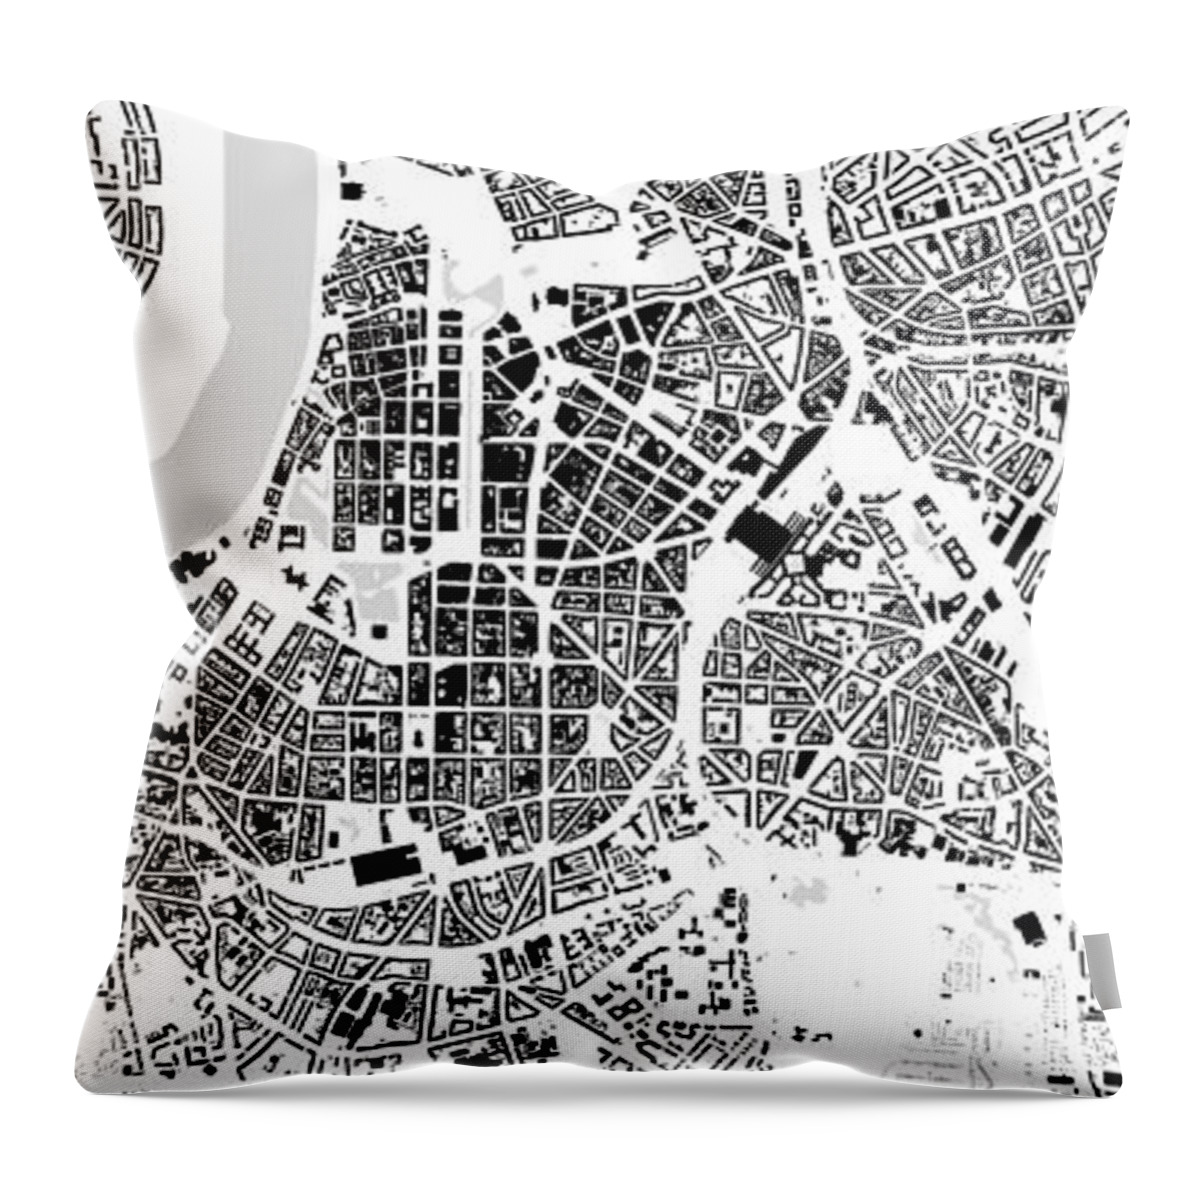 City Throw Pillow featuring the digital art Duesseldorf building map by Christian Pauschert